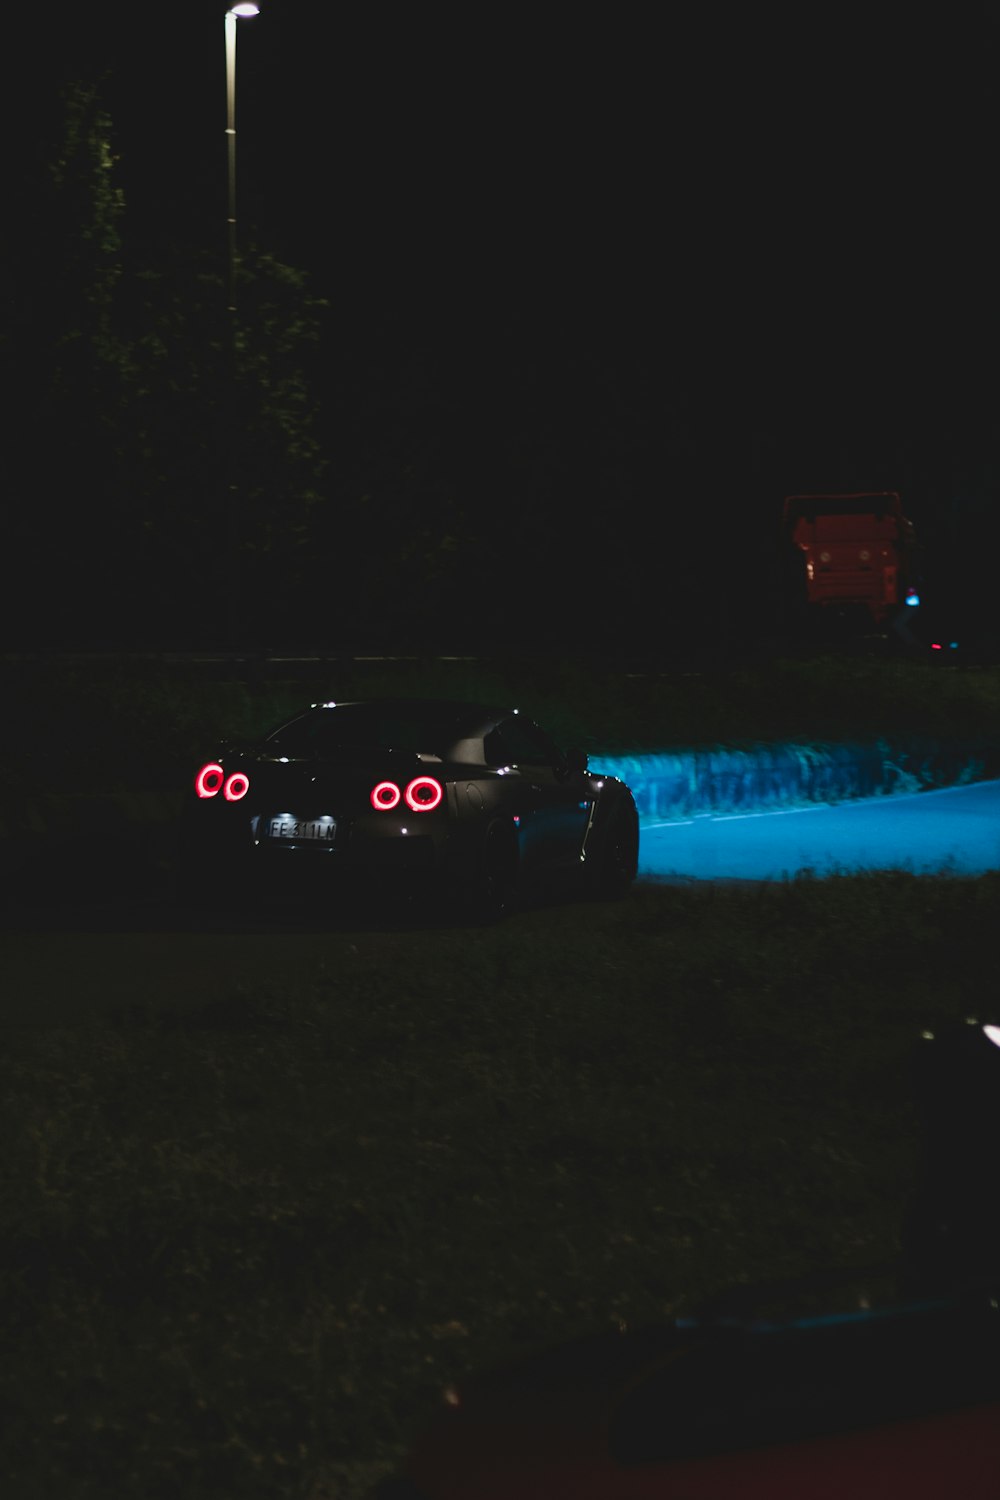 夜間の道路上の黒い車